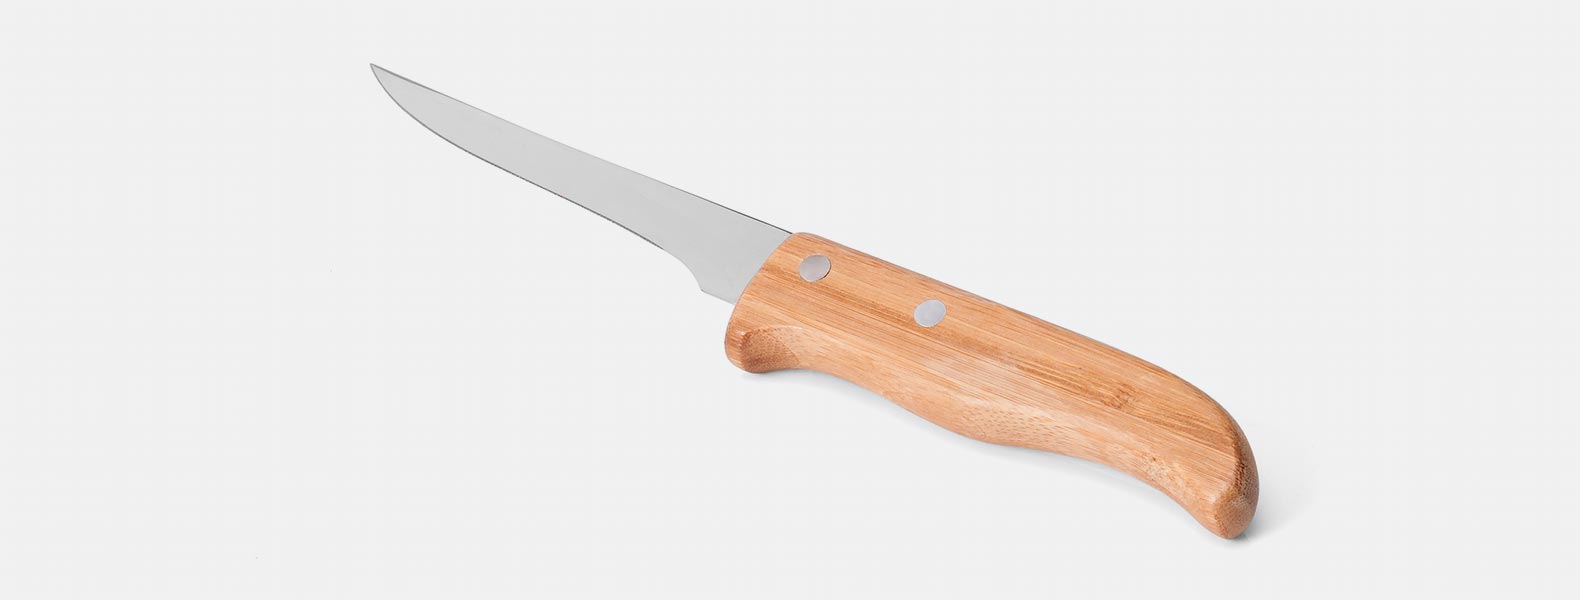 Kit composto por seis peças com cabos em bambu e lâminas em aço inox com rebites resistentes, sendo uma faca 8”, uma faca 7”, uma chaira 8”, um cutelo 6”, uma faca 5” para desossar e uma faca 4” de frutas. Estão organizados em fita elástica preta no interior de um estojo.